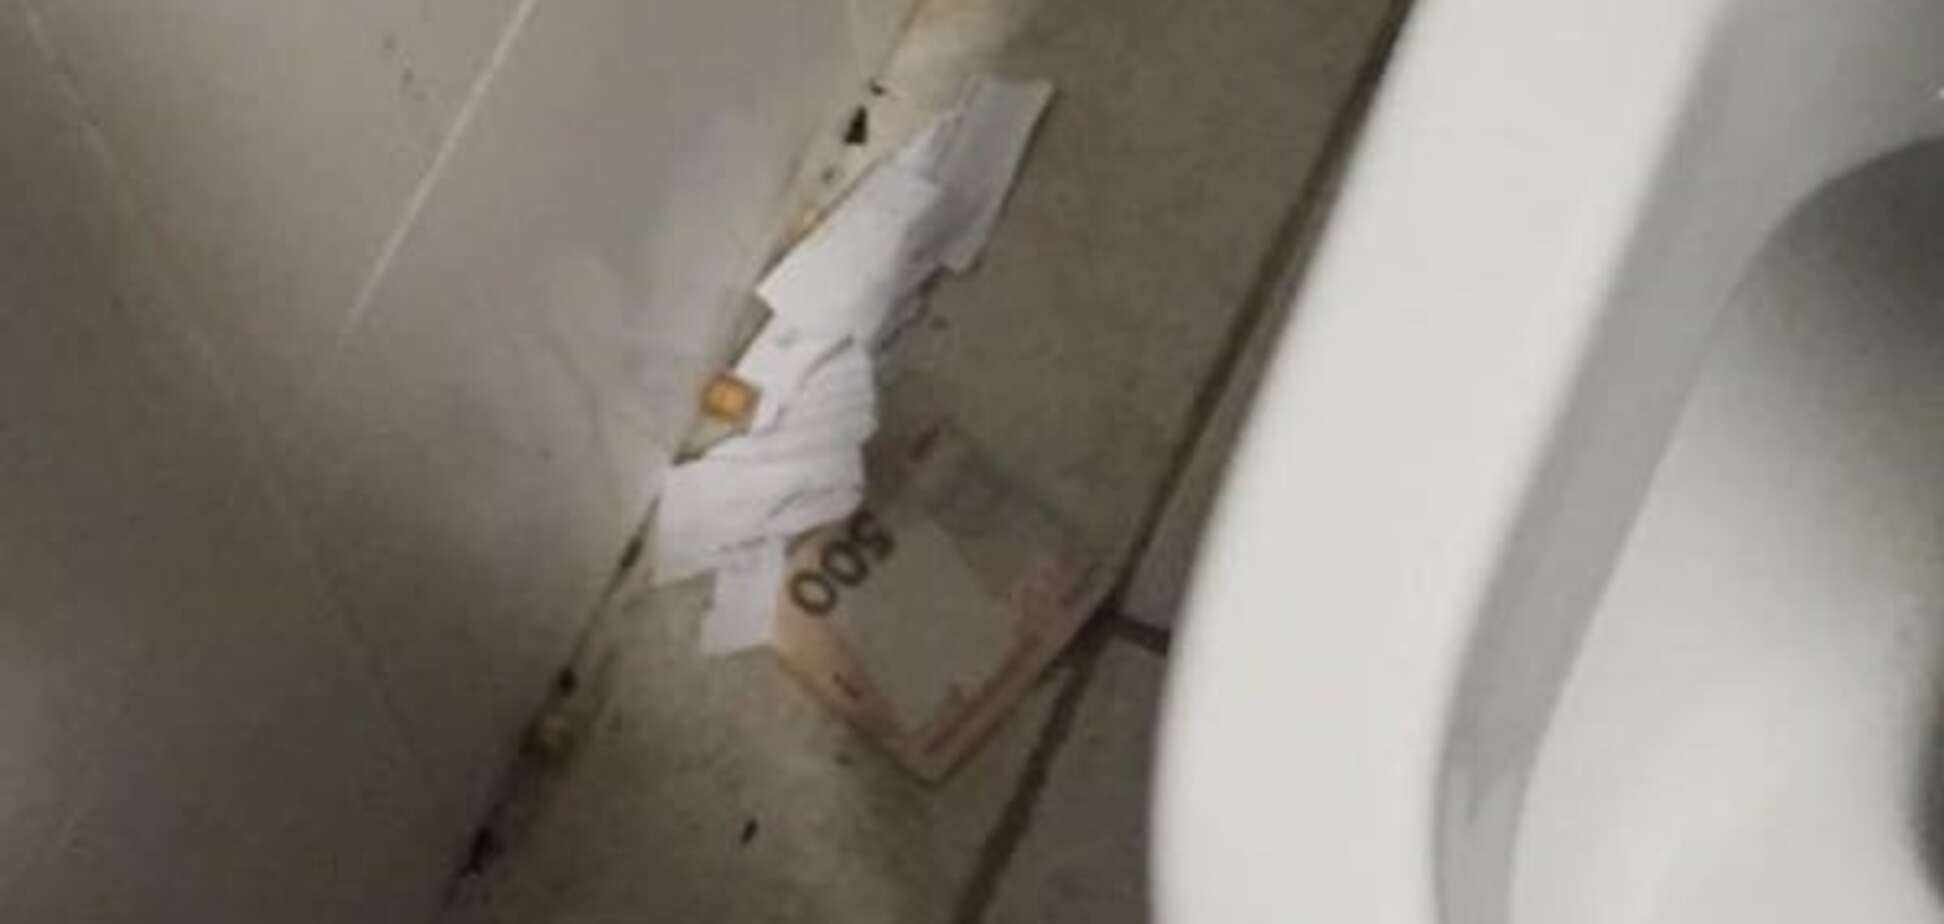 Ховали гроші в туалеті: в аеропорту Львова затримали хабарників